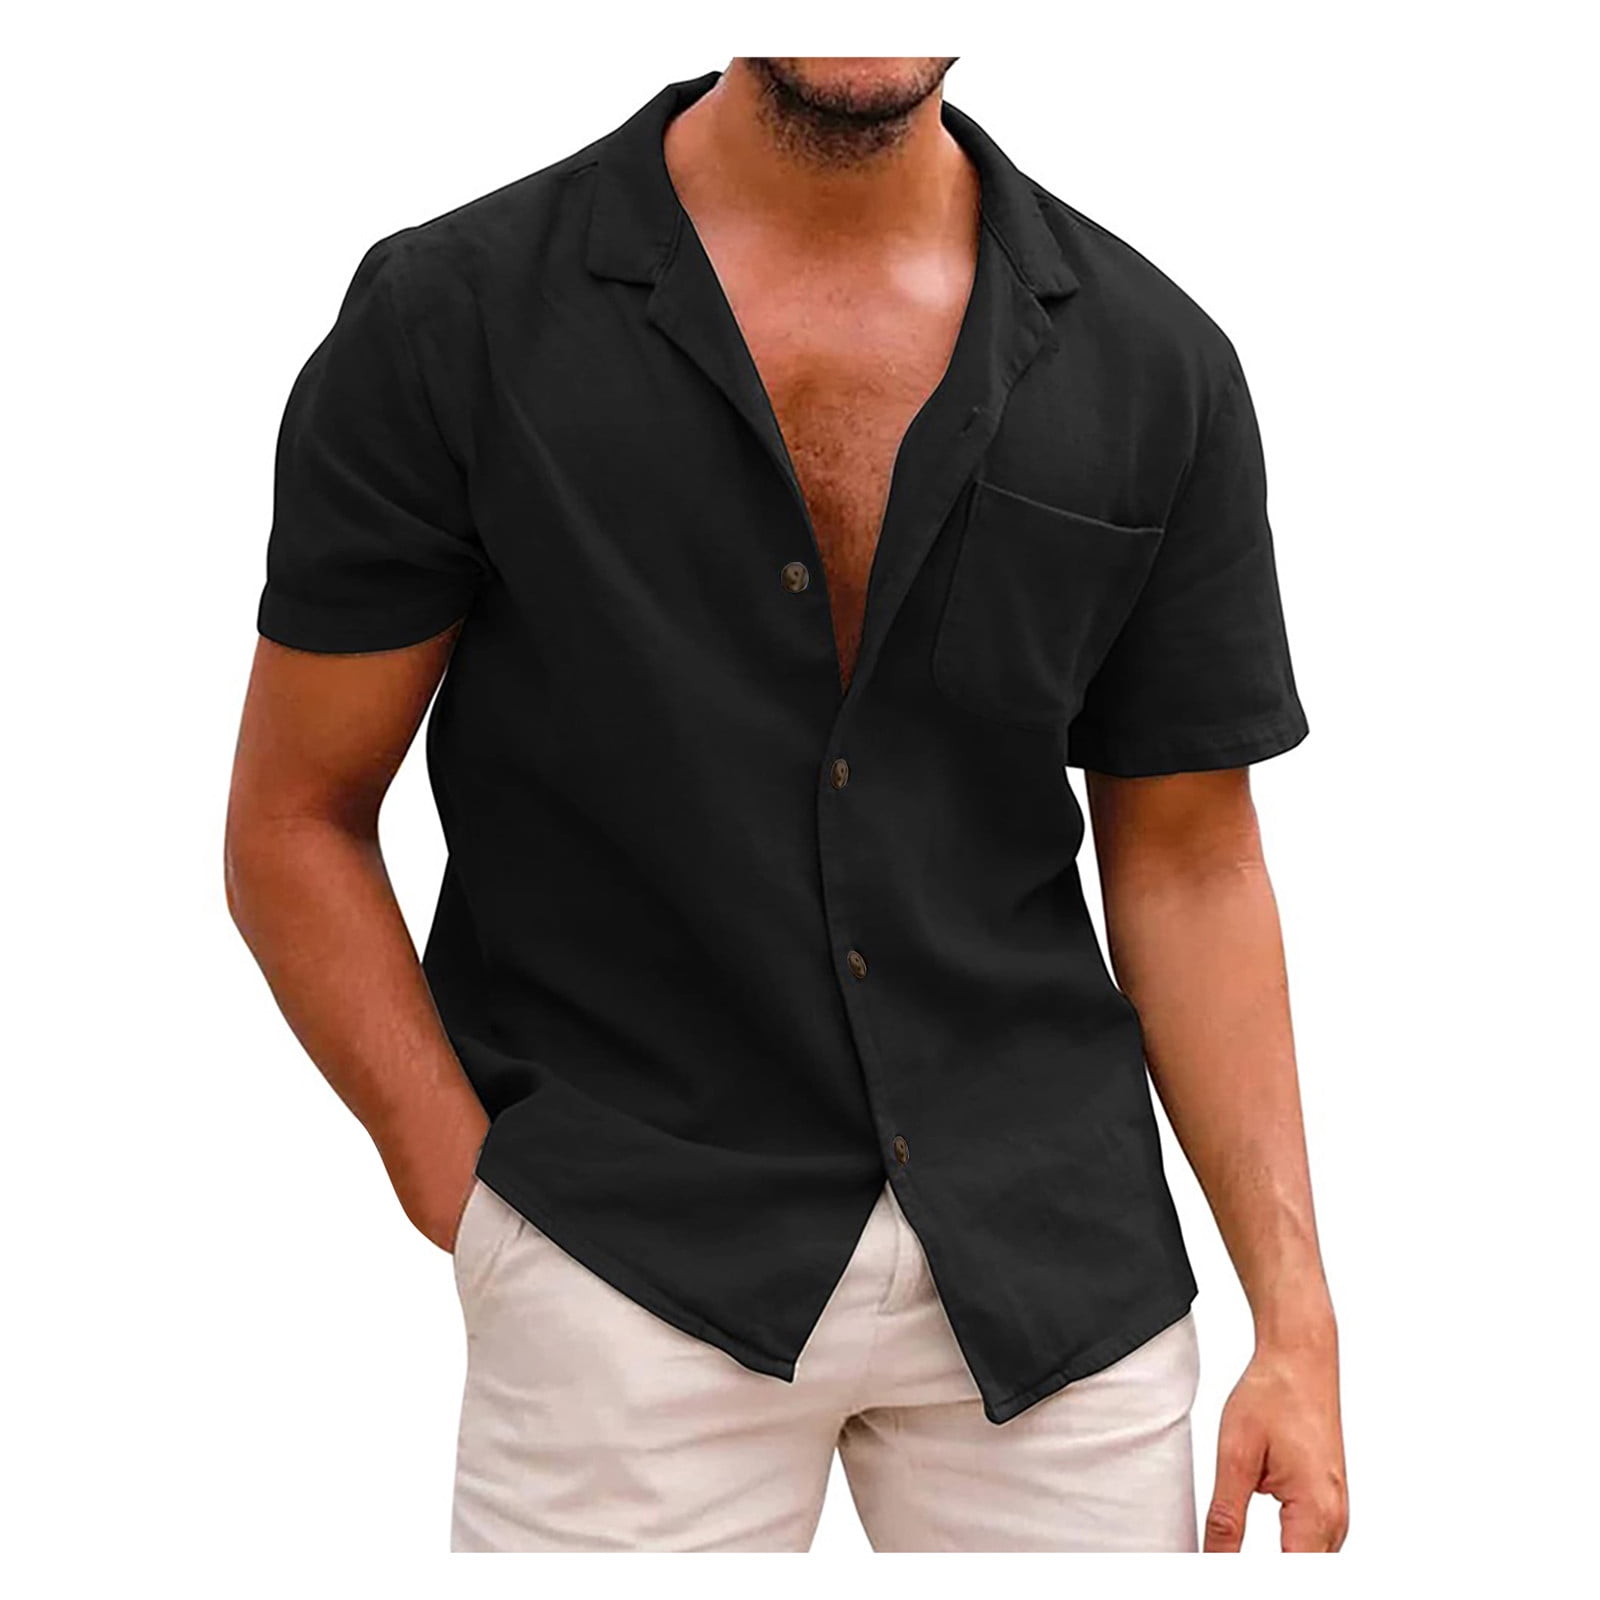 RYRJJ On Clearance Men's Short Sleeve Regular Fit Dress Shirts Button ...